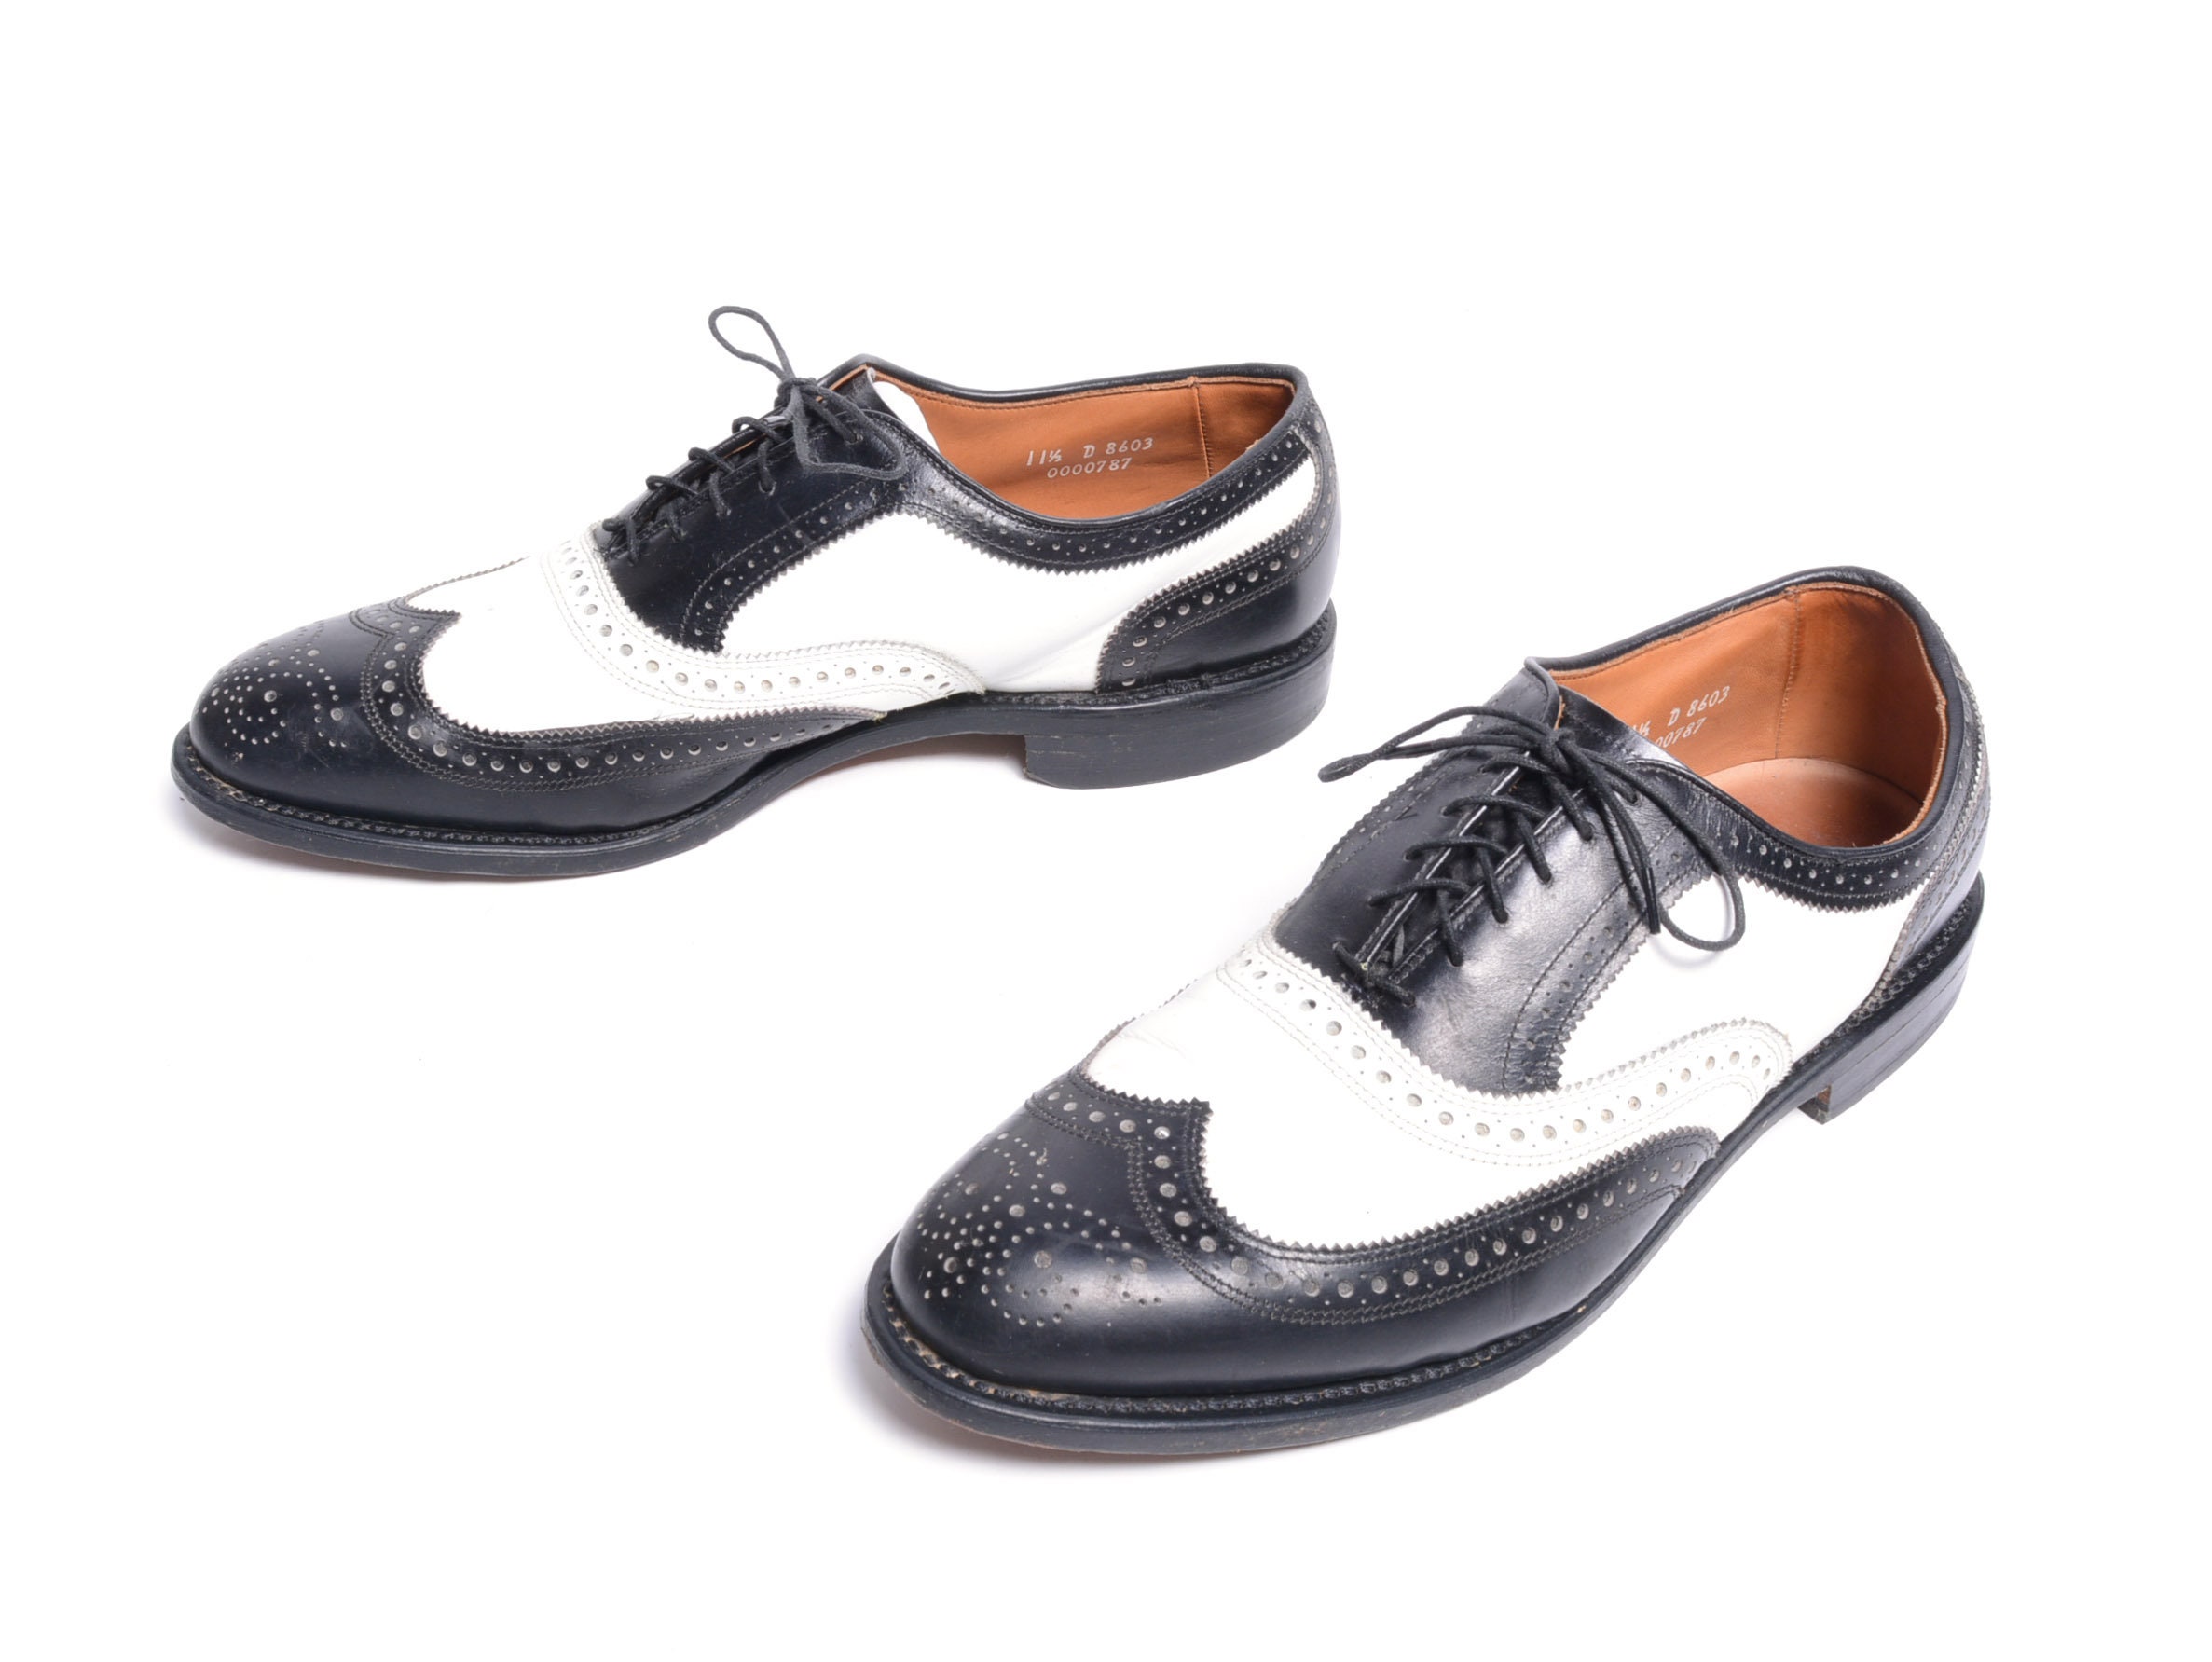 Zapatos Zapatos para hombre Oxford y con punto en ala Cuero hecho a mano para hombre Oxfords Wingtip Spectator Vestido con cordones Negro y blanco Puntera Zapatos-1 